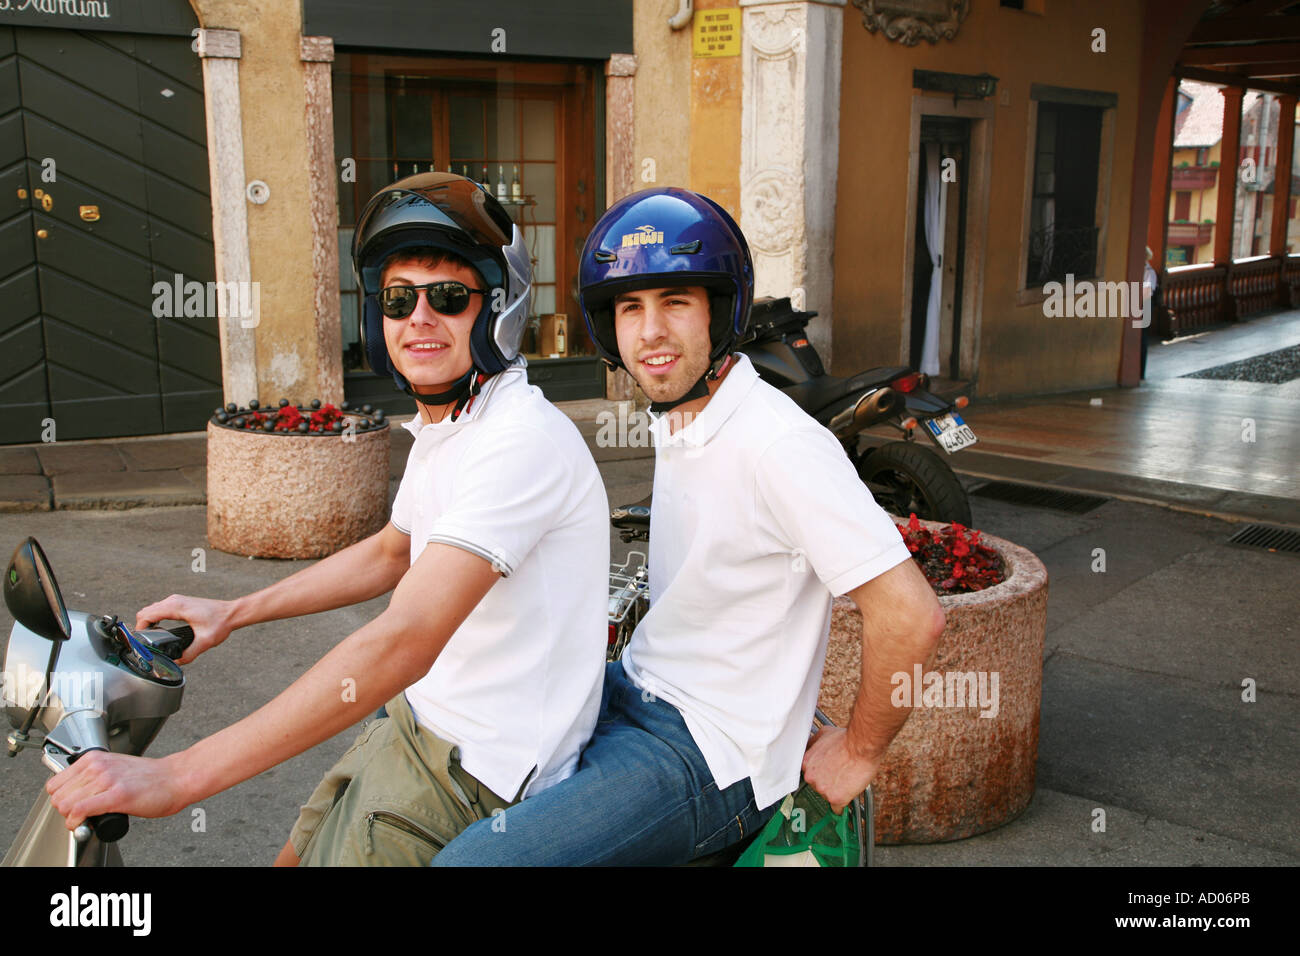 Zwei junge Männer auf einem Moped in Italien Stockfoto